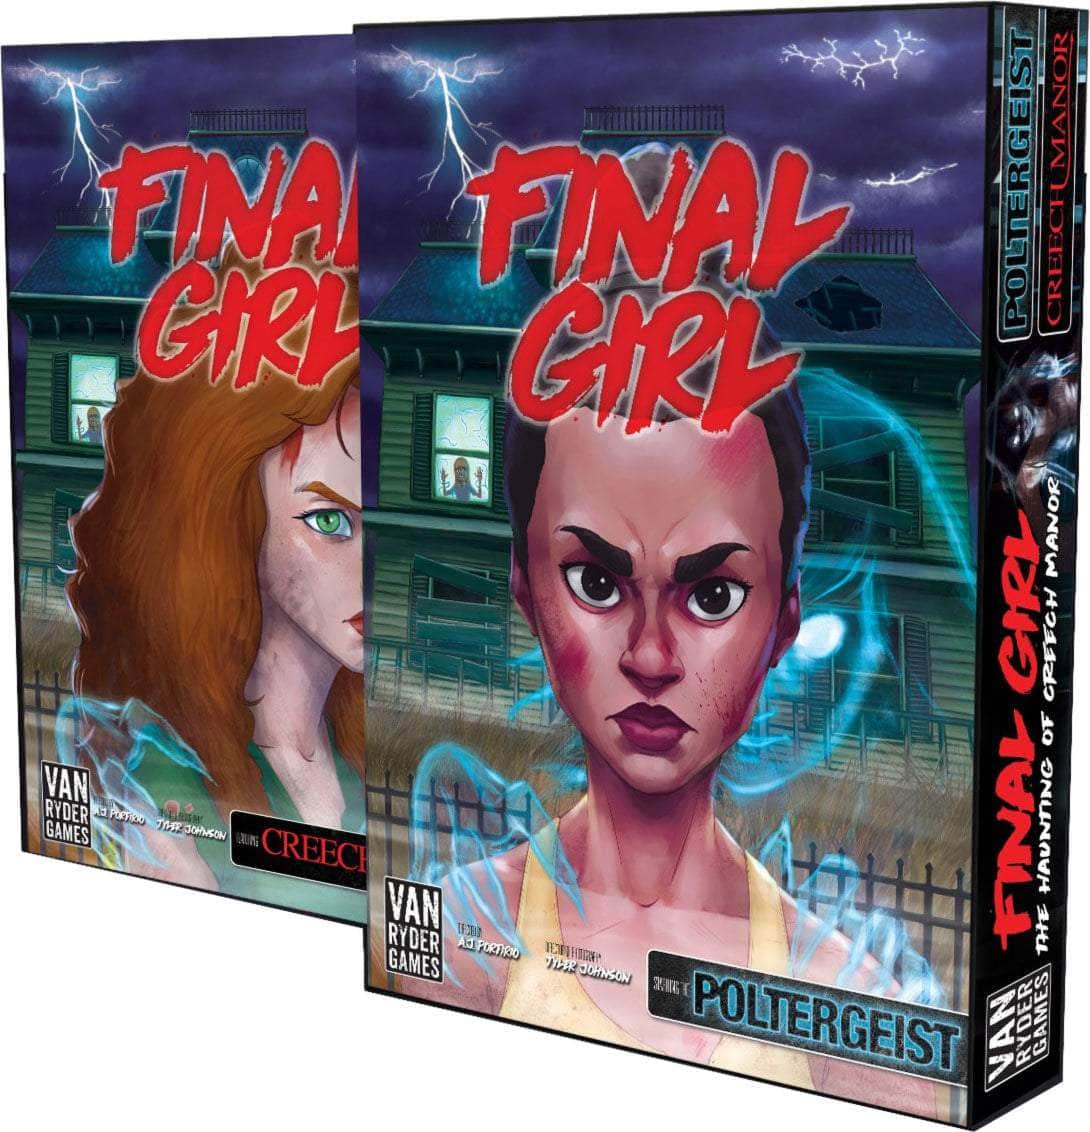 Final Girl: The Haunting of Creech Manor [Series 1] (Kickstarter förbeställning Special) Kickstarter Board Game Expansion Van Ryder Games KS001216B